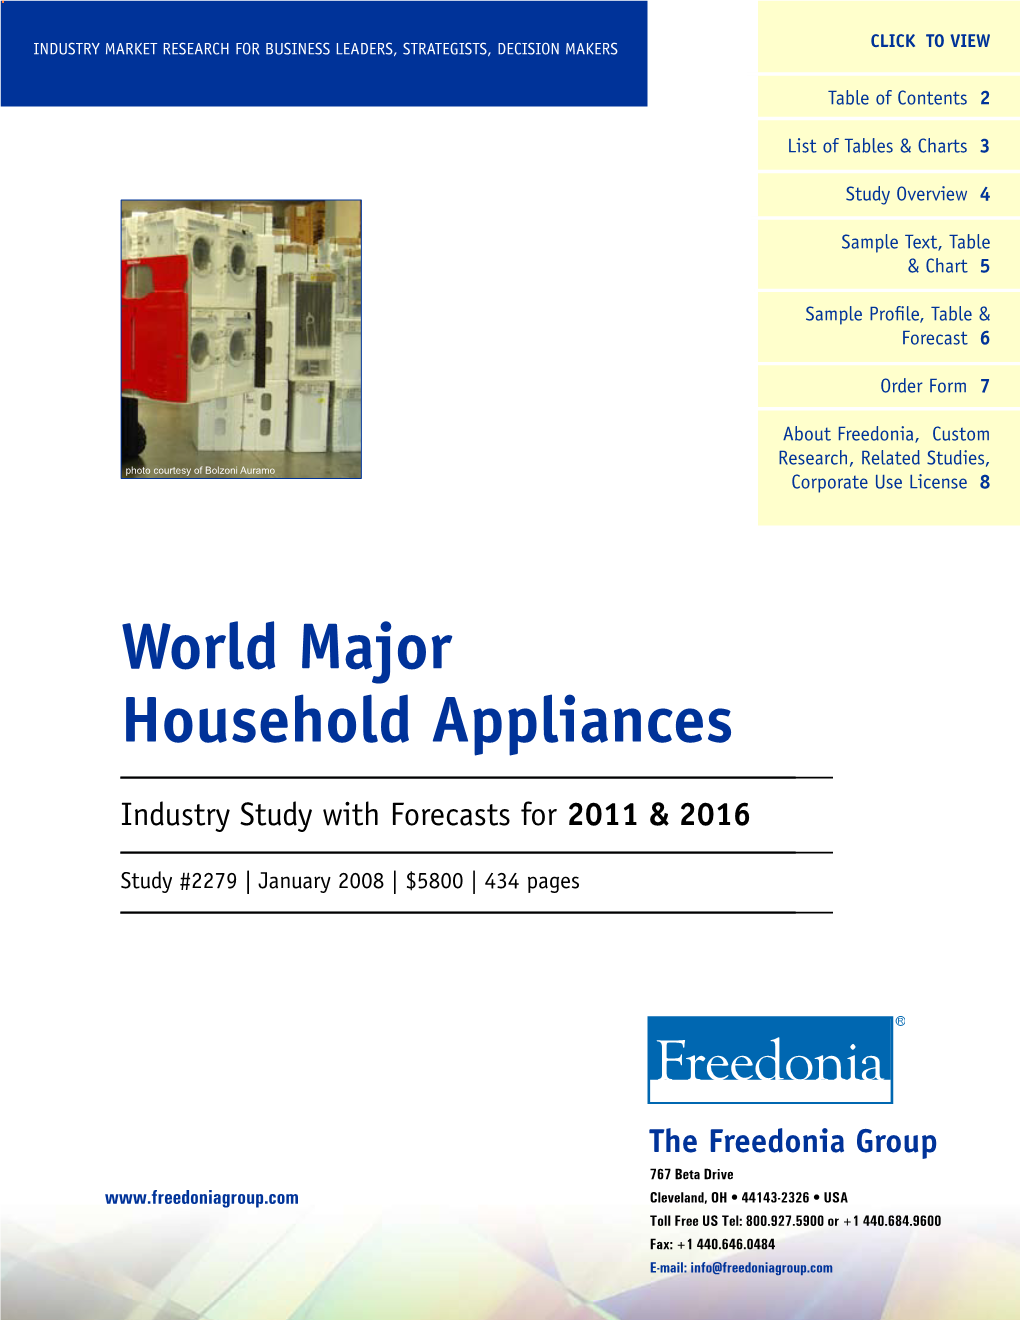 World Major Household Appliances